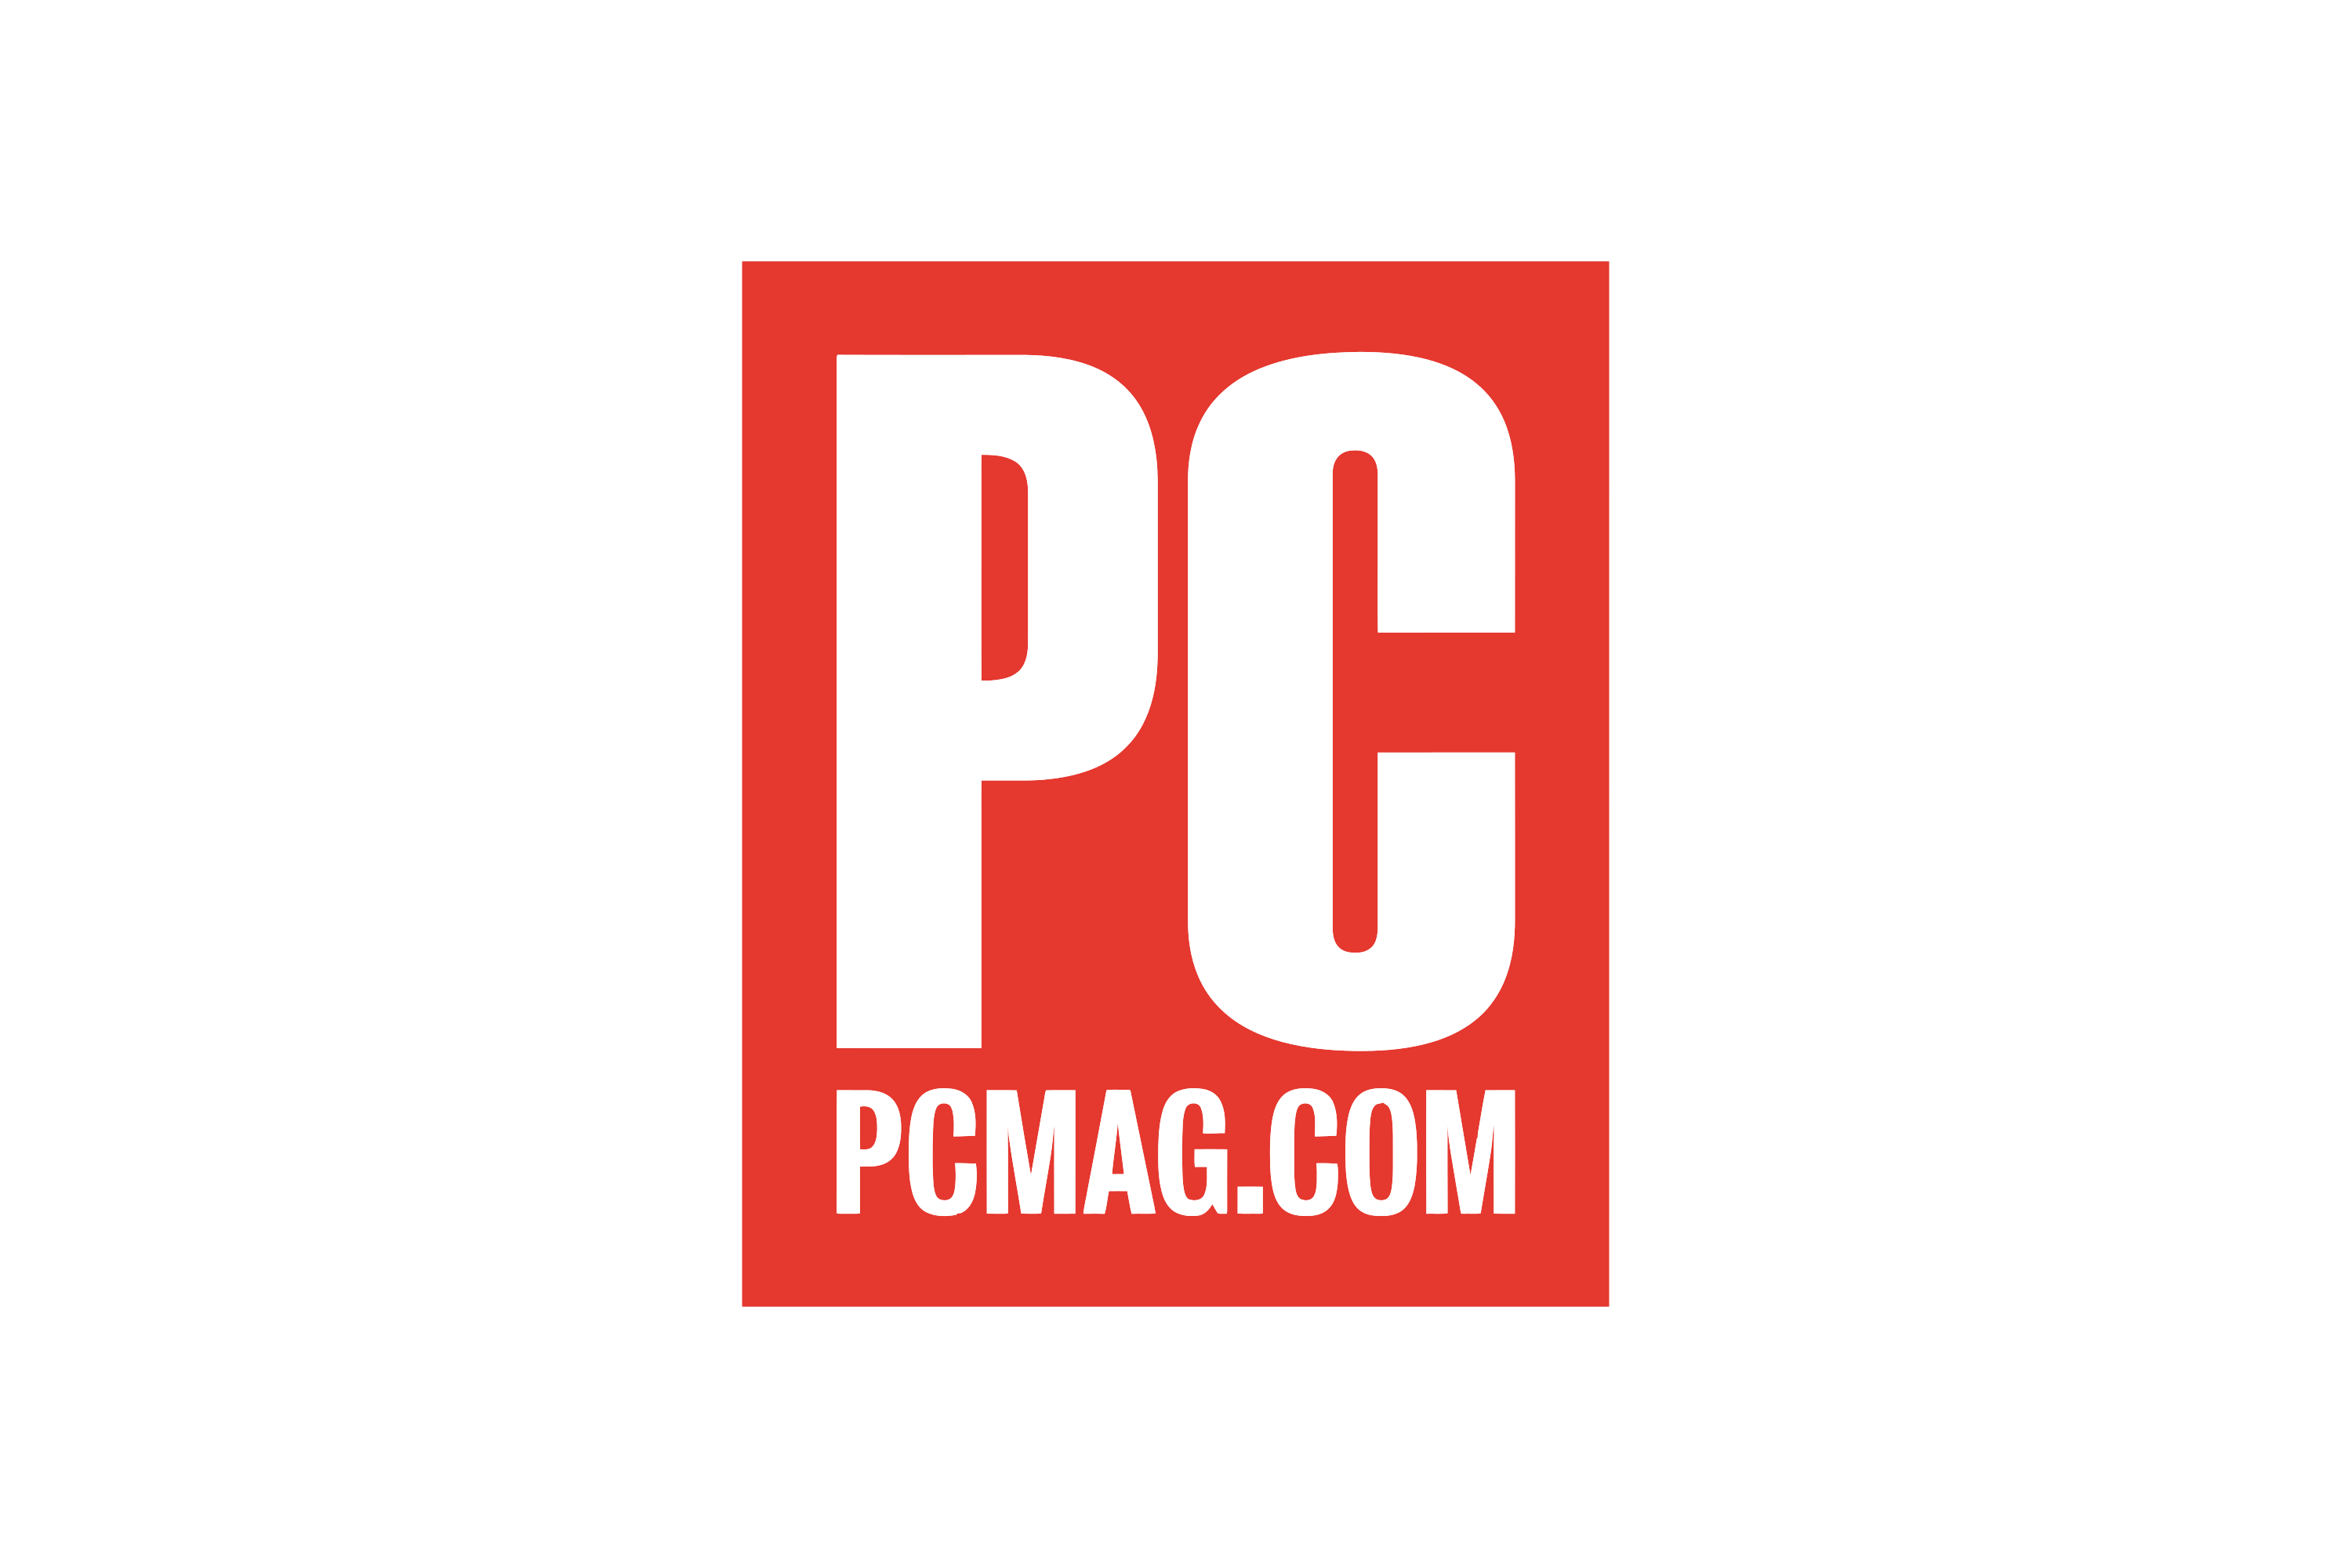 pc mag logo